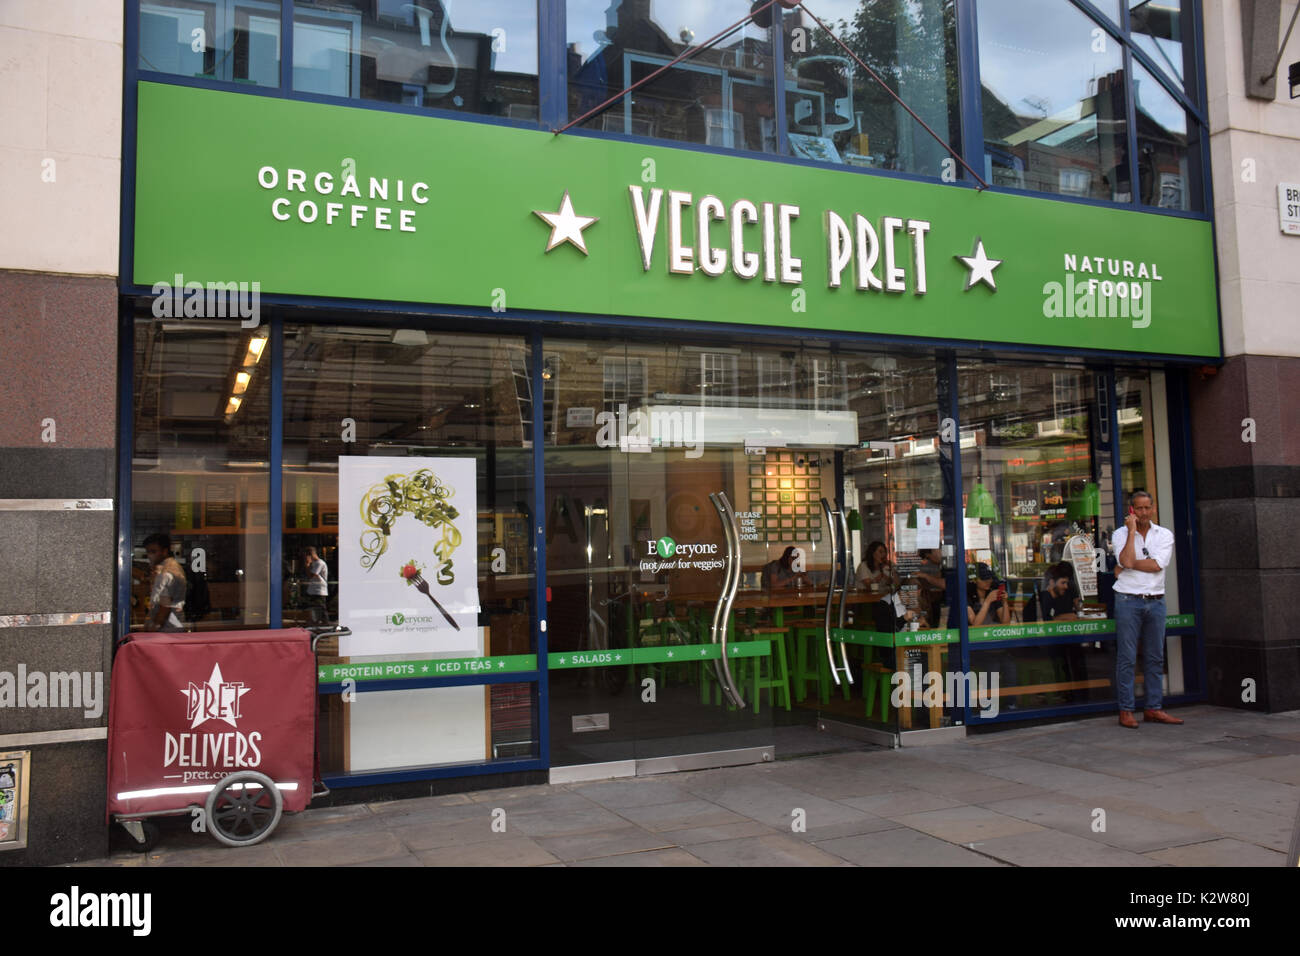 Veggie pret, nouveau-végétarien seul débouché de pret-a-manger, Londres Uk Banque D'Images